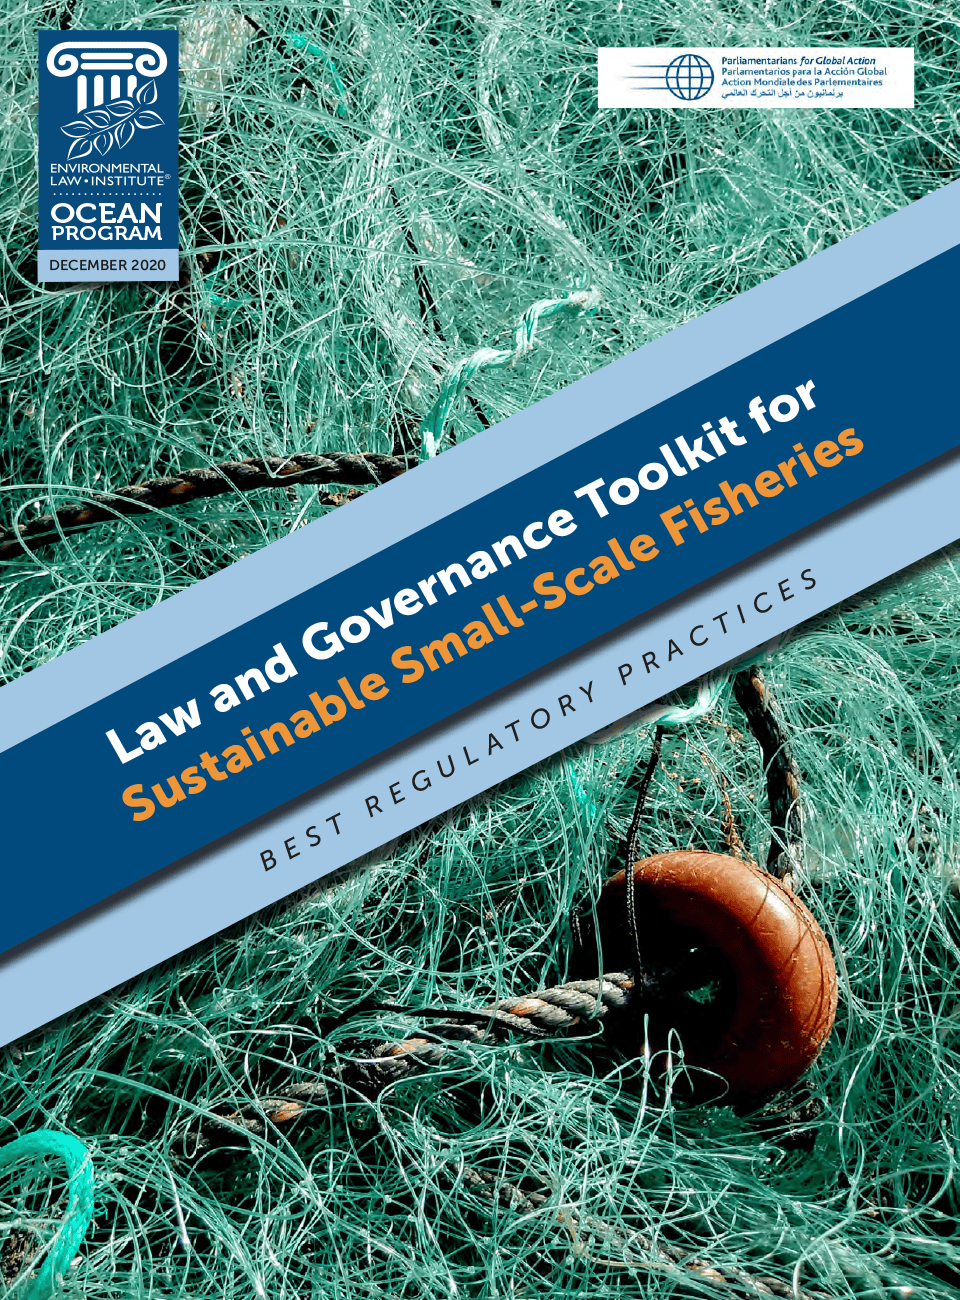 Conjunto de instrumentos jurídicos y de gobernanza para la pesca sostenible a pequeña escala: Mejores prácticas reglamentarias